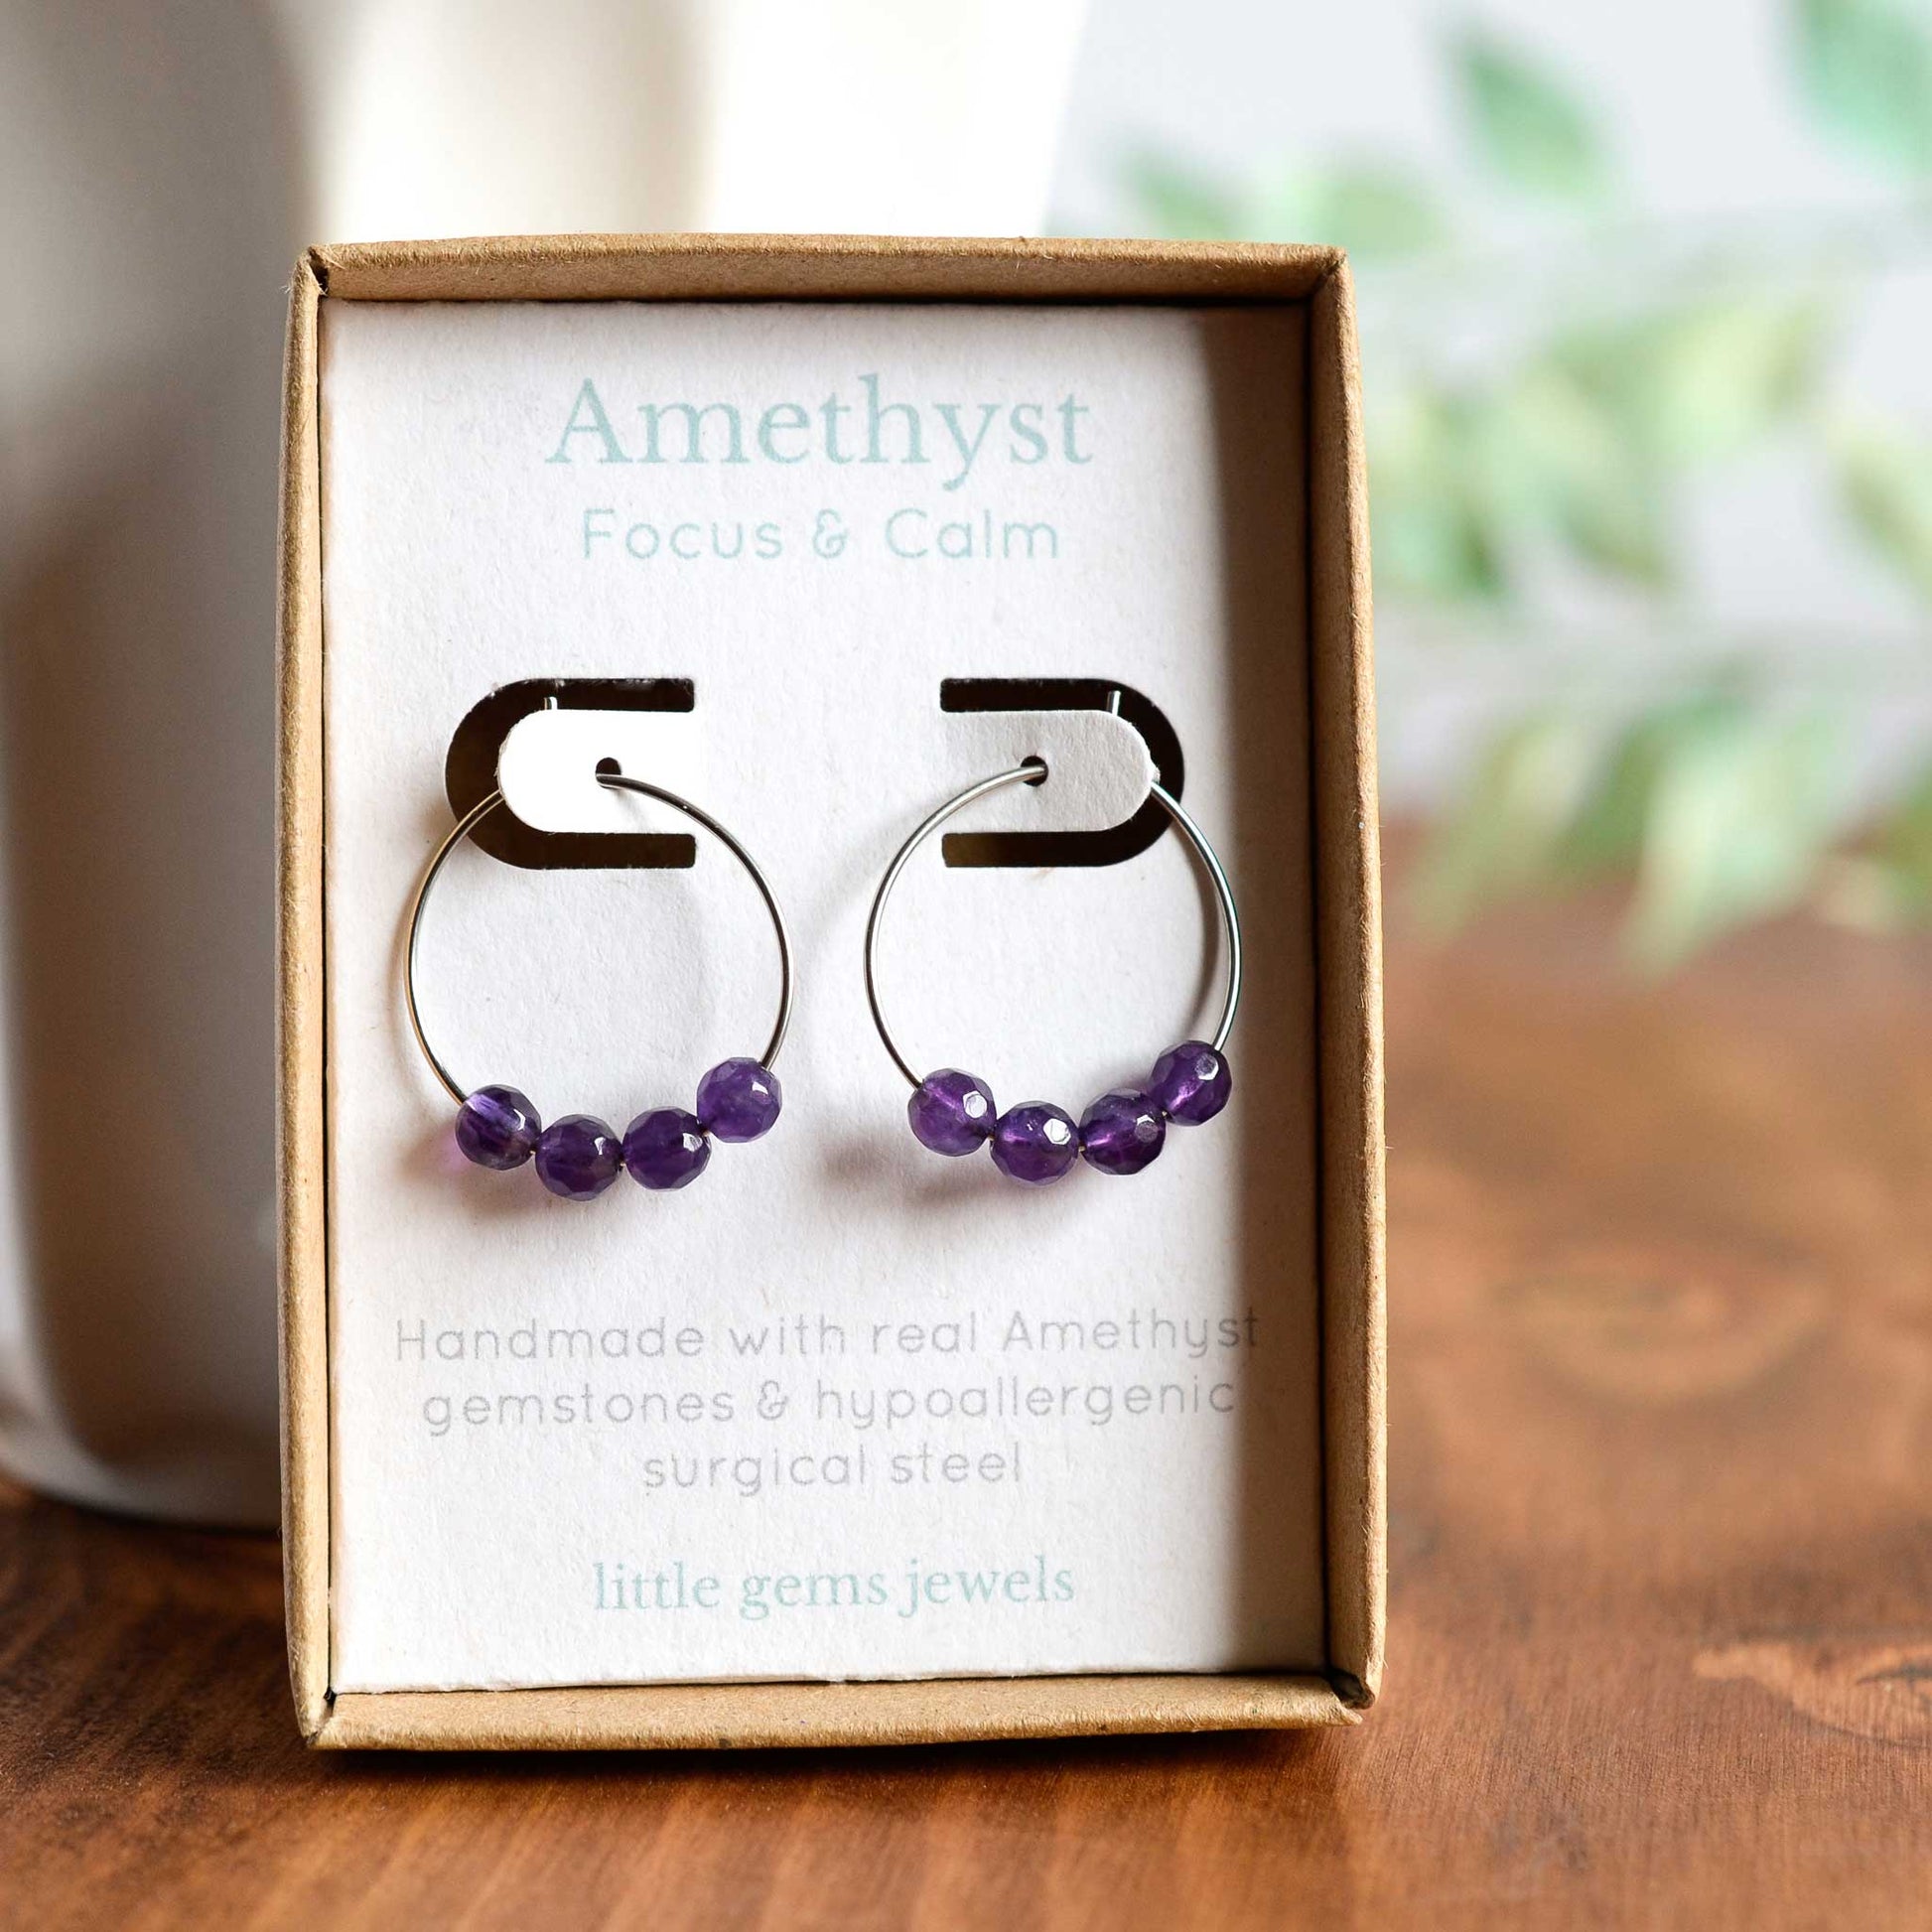 Amethyst hoop earrings in gift box